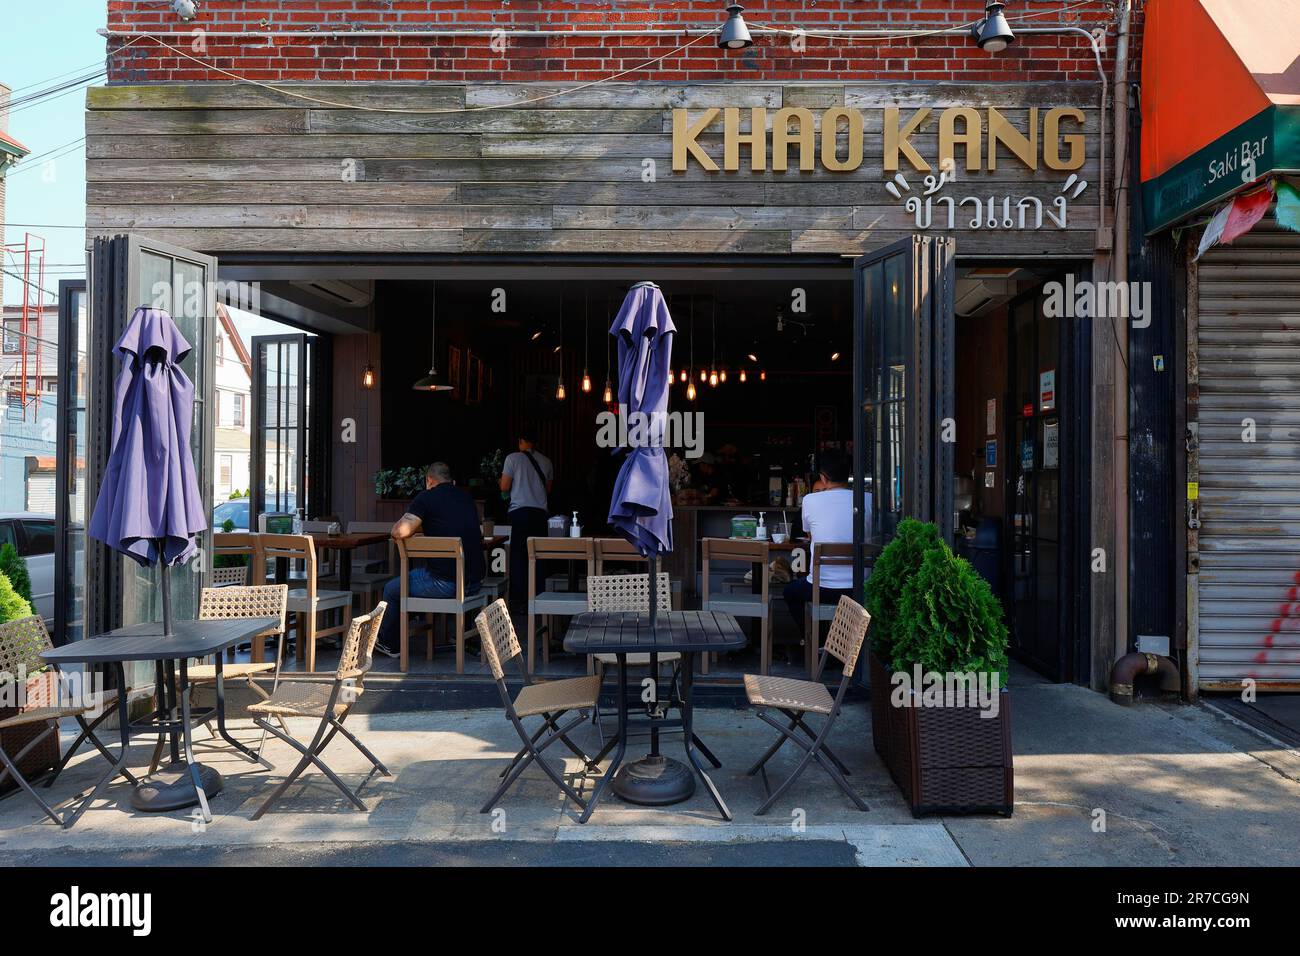 Khao Kang ข้าวแกง, 76-20 Woodside Ave, Queens, New York, NYC, Foto eines thailändischen Restaurants mit Reis und Curry in Elmhurst. Stockfoto